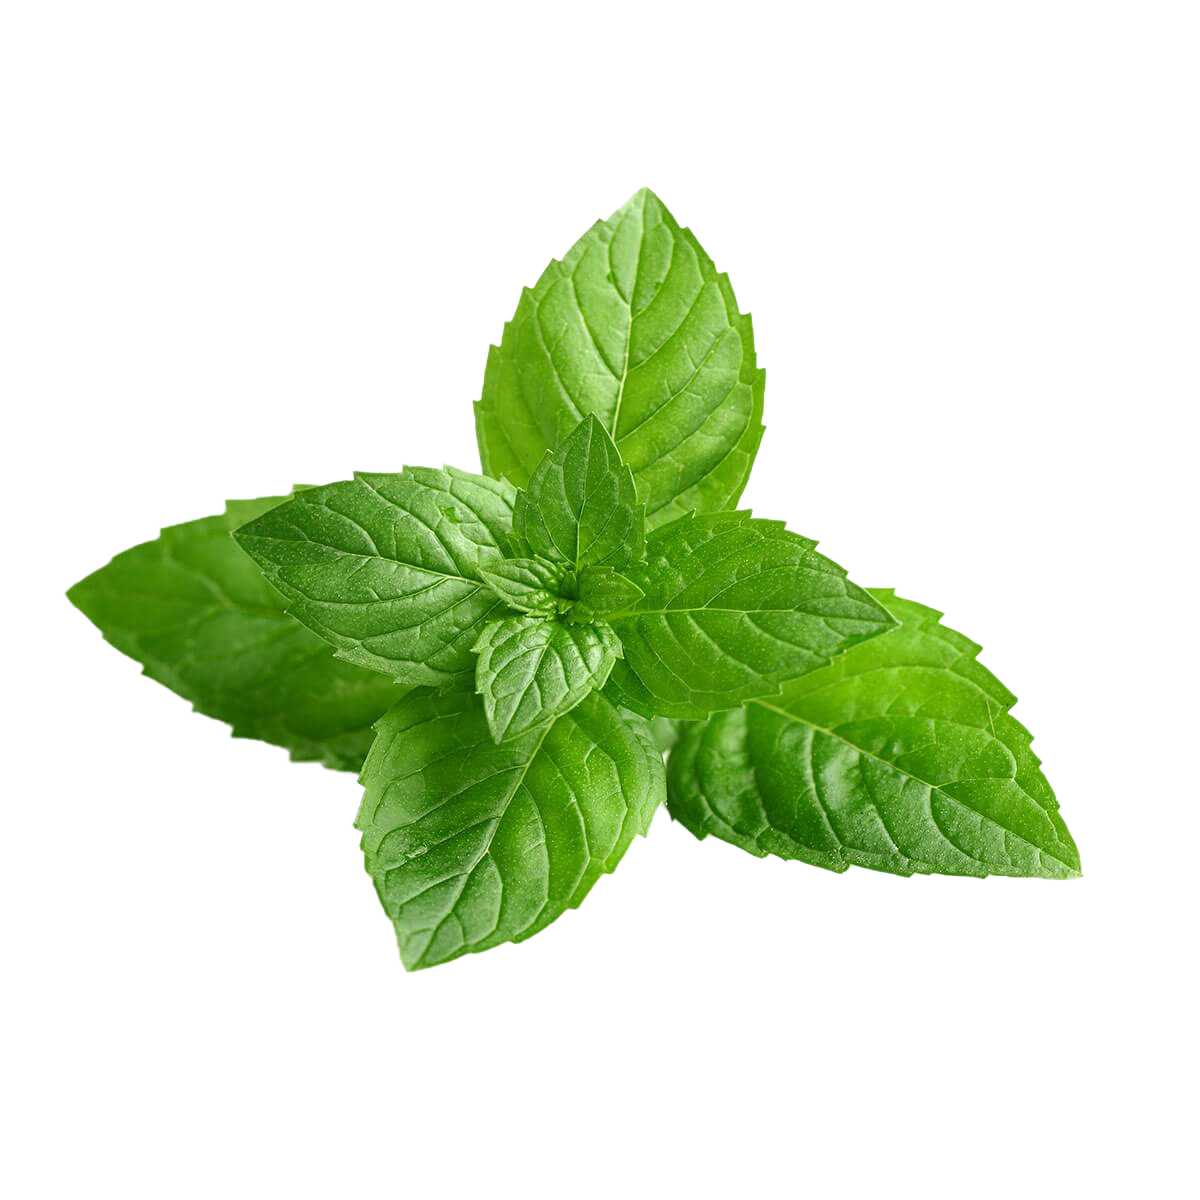 Peppermint Plant Transparent Image